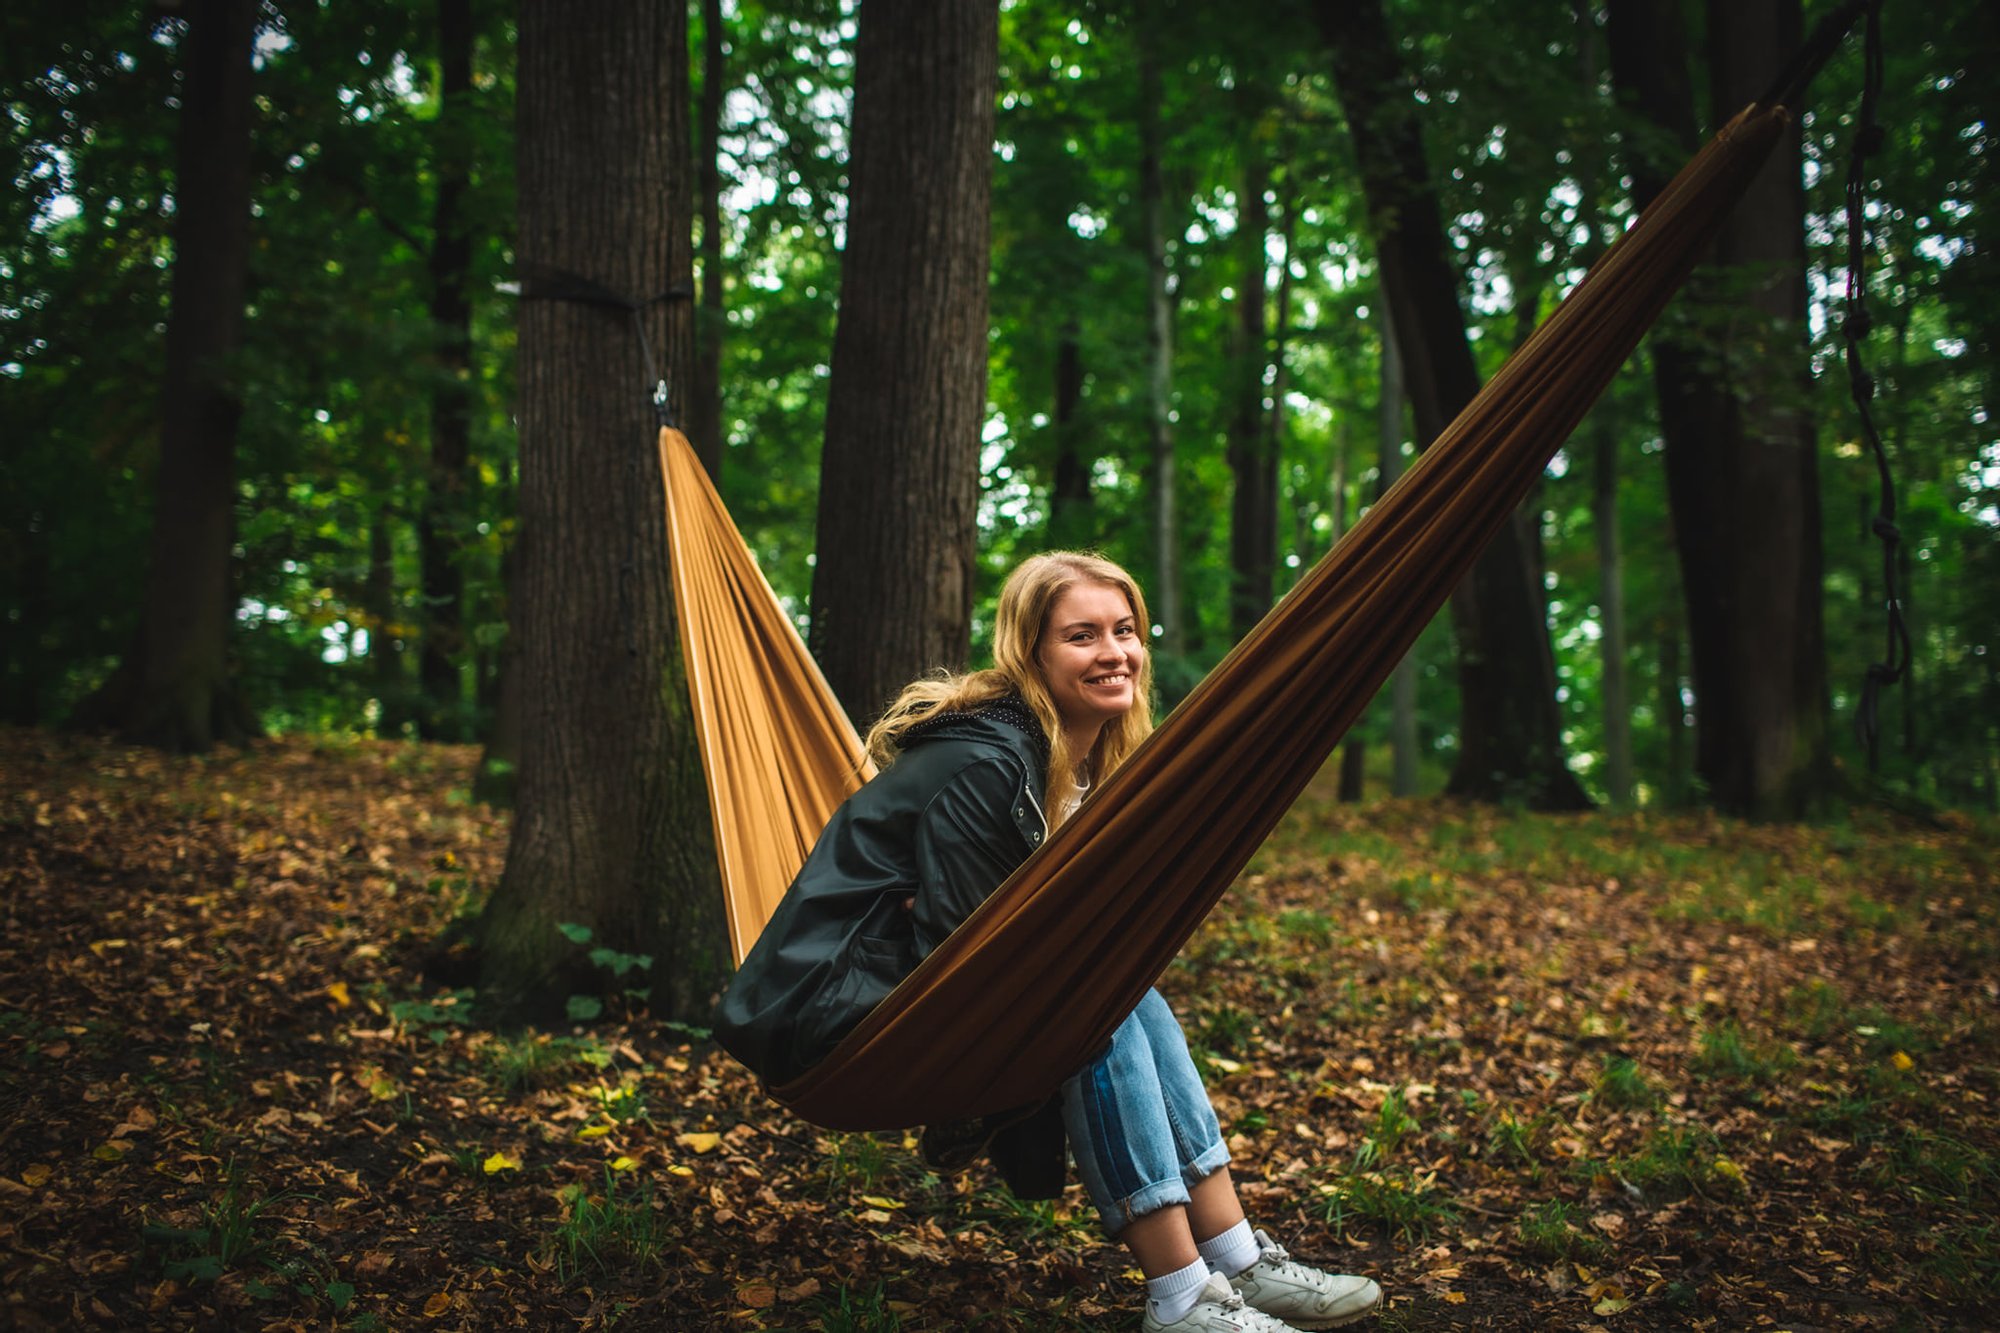 Młoda kobieta siedzi na hamaku, rozwieszonym między drzewami w parku. Szeroko uśmiecha się do obiektywu. To Agnieszka Kozak, prowadząca spotkania.